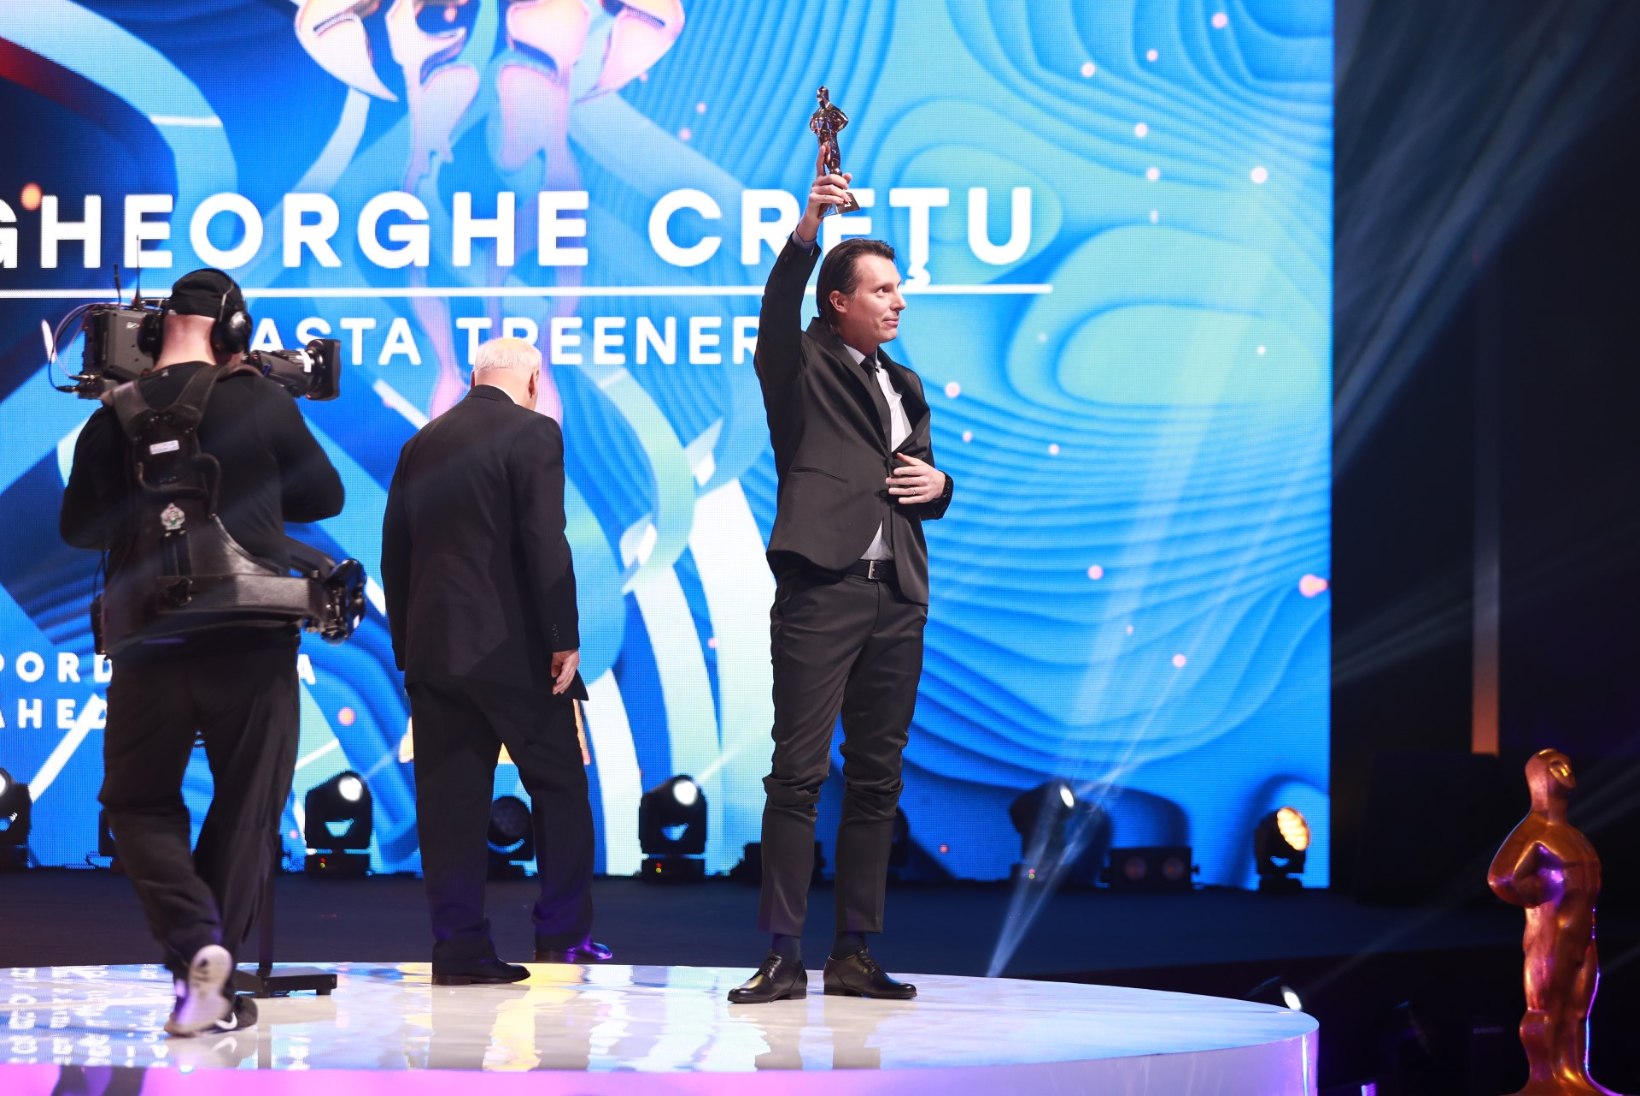 Gheorghe Cretu: on suur au olla osa Eesti spordiperest